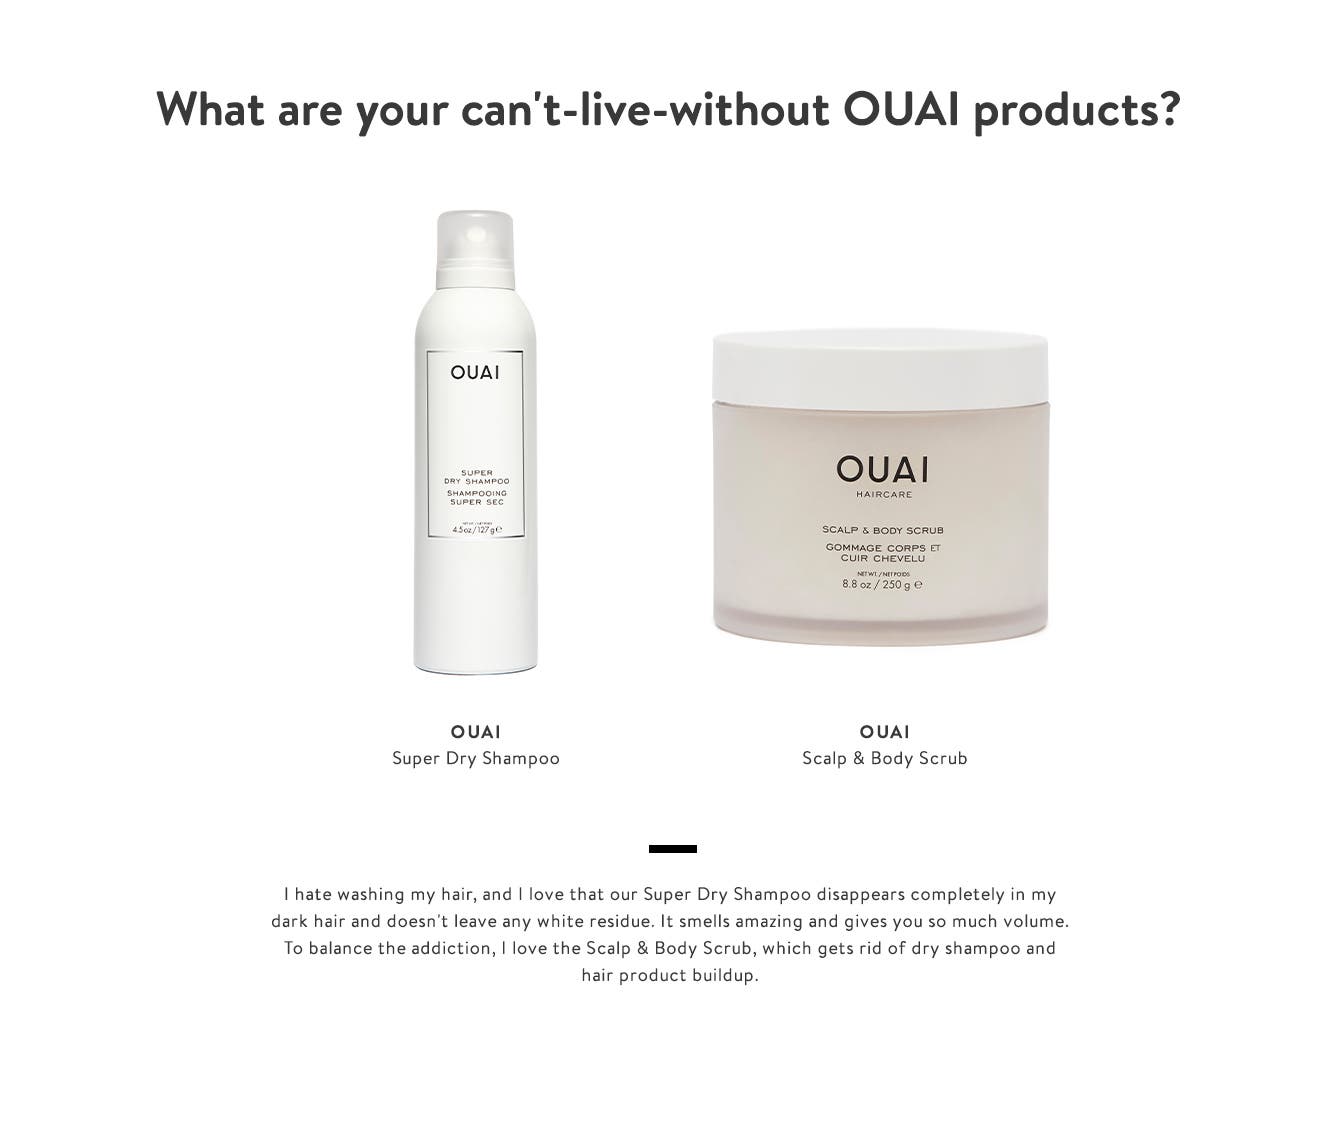 OUAI Super Dry Shampoo and QUAI Scalp & Body Scrub. 